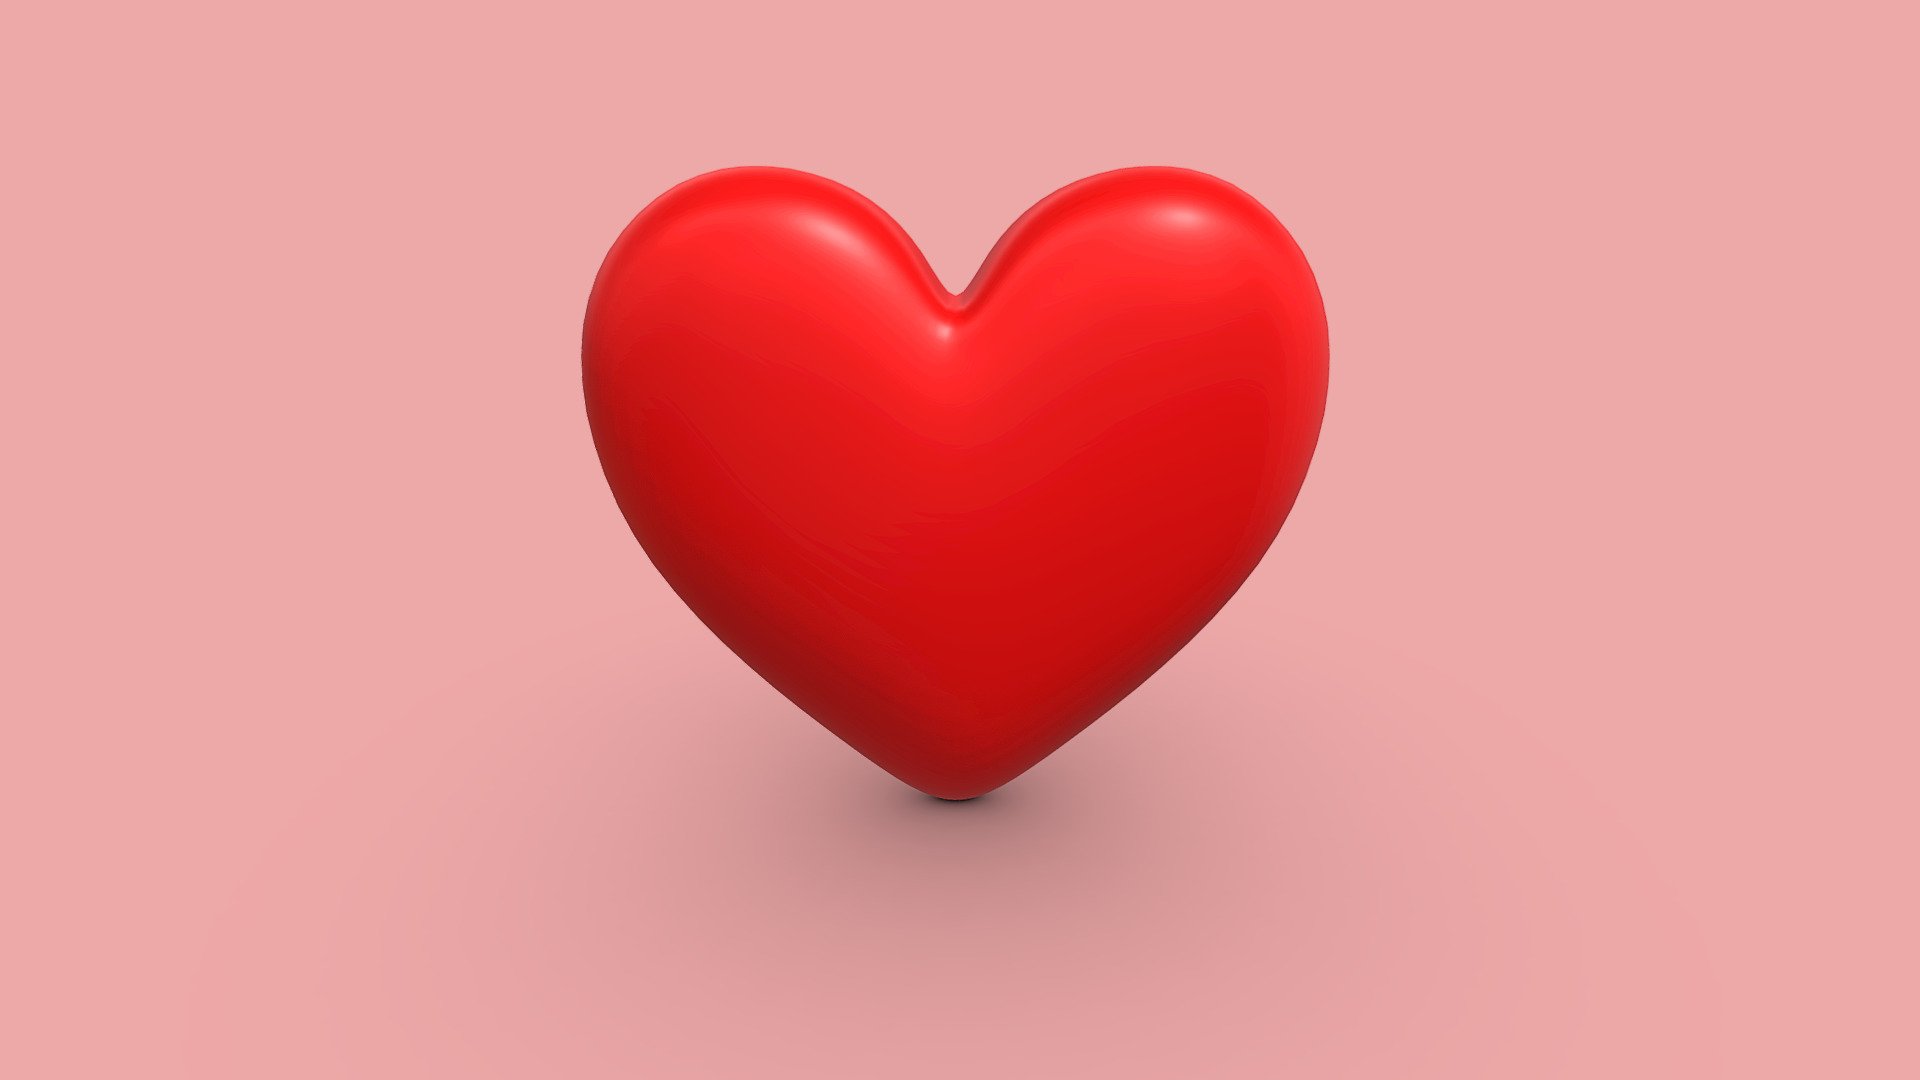 The &ldquo;Heart/Love Emoji